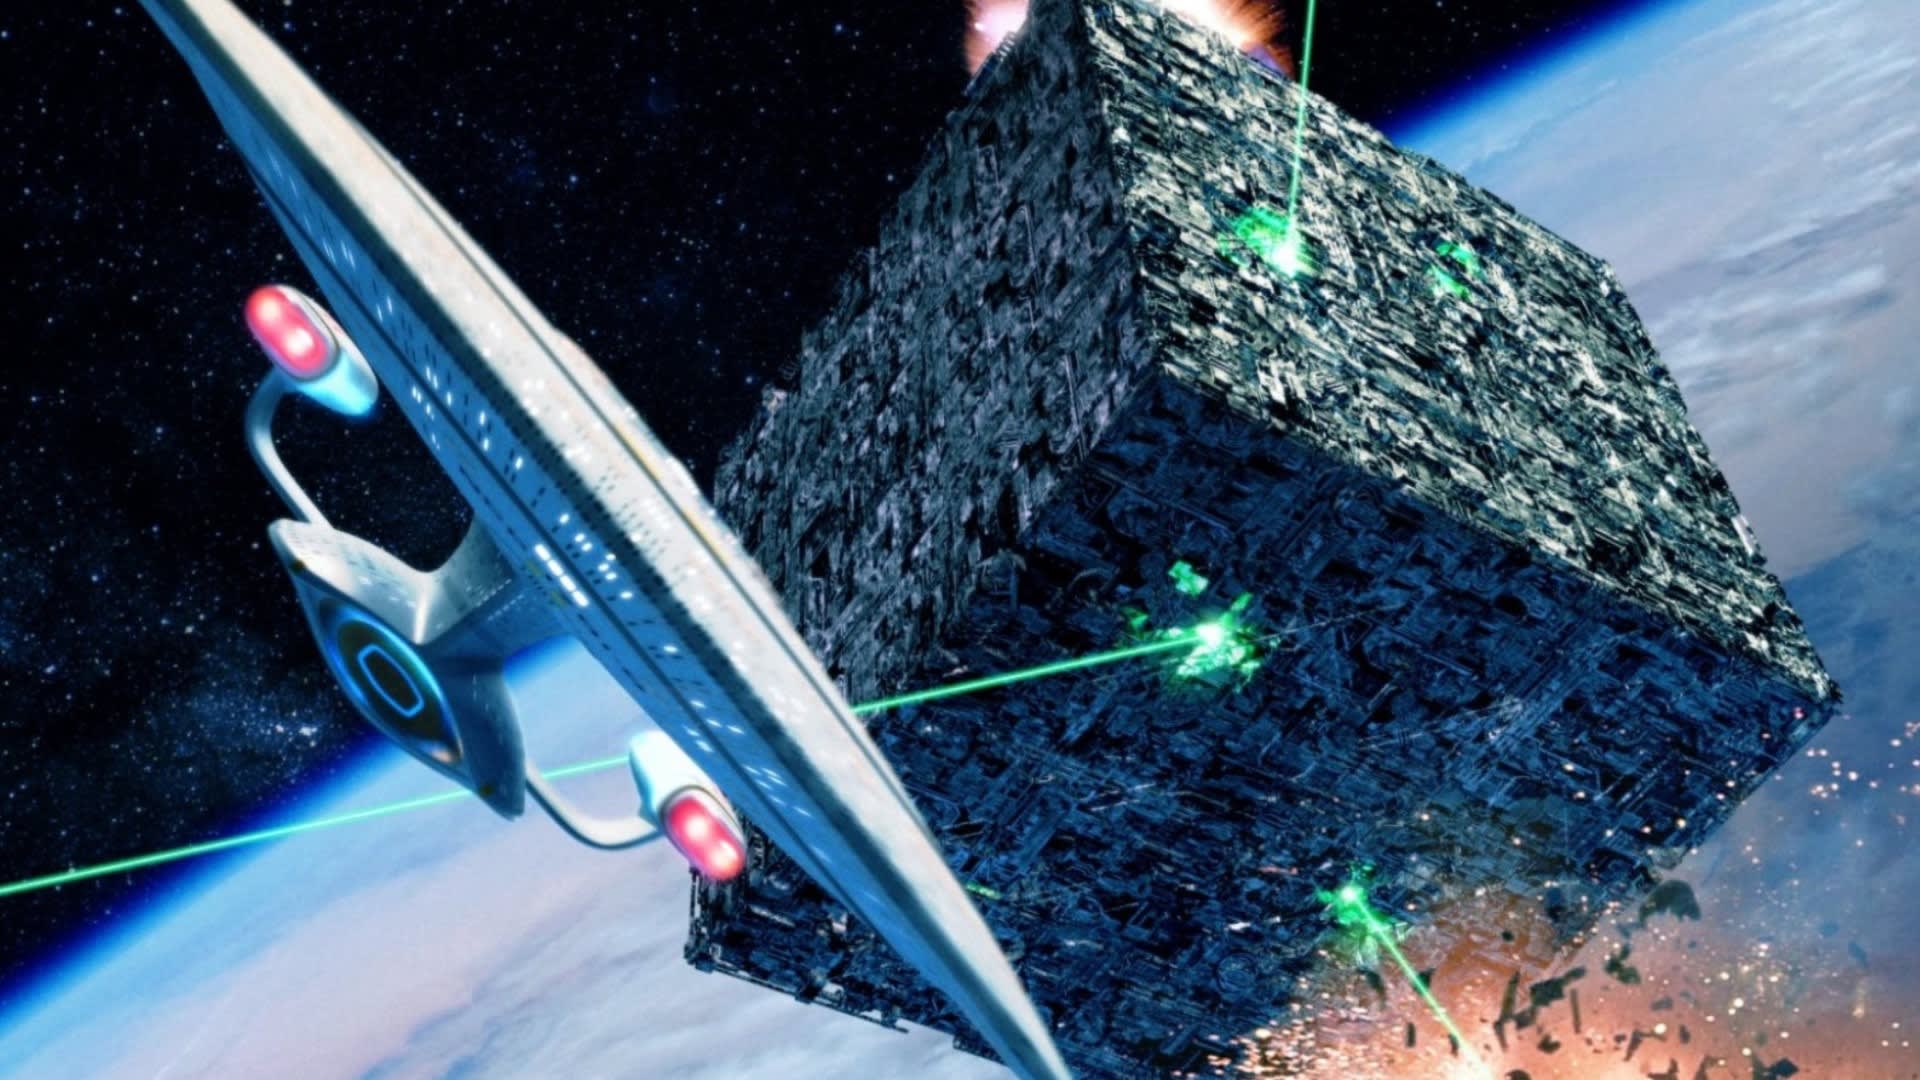 Enterprise vs. Borgská krychle